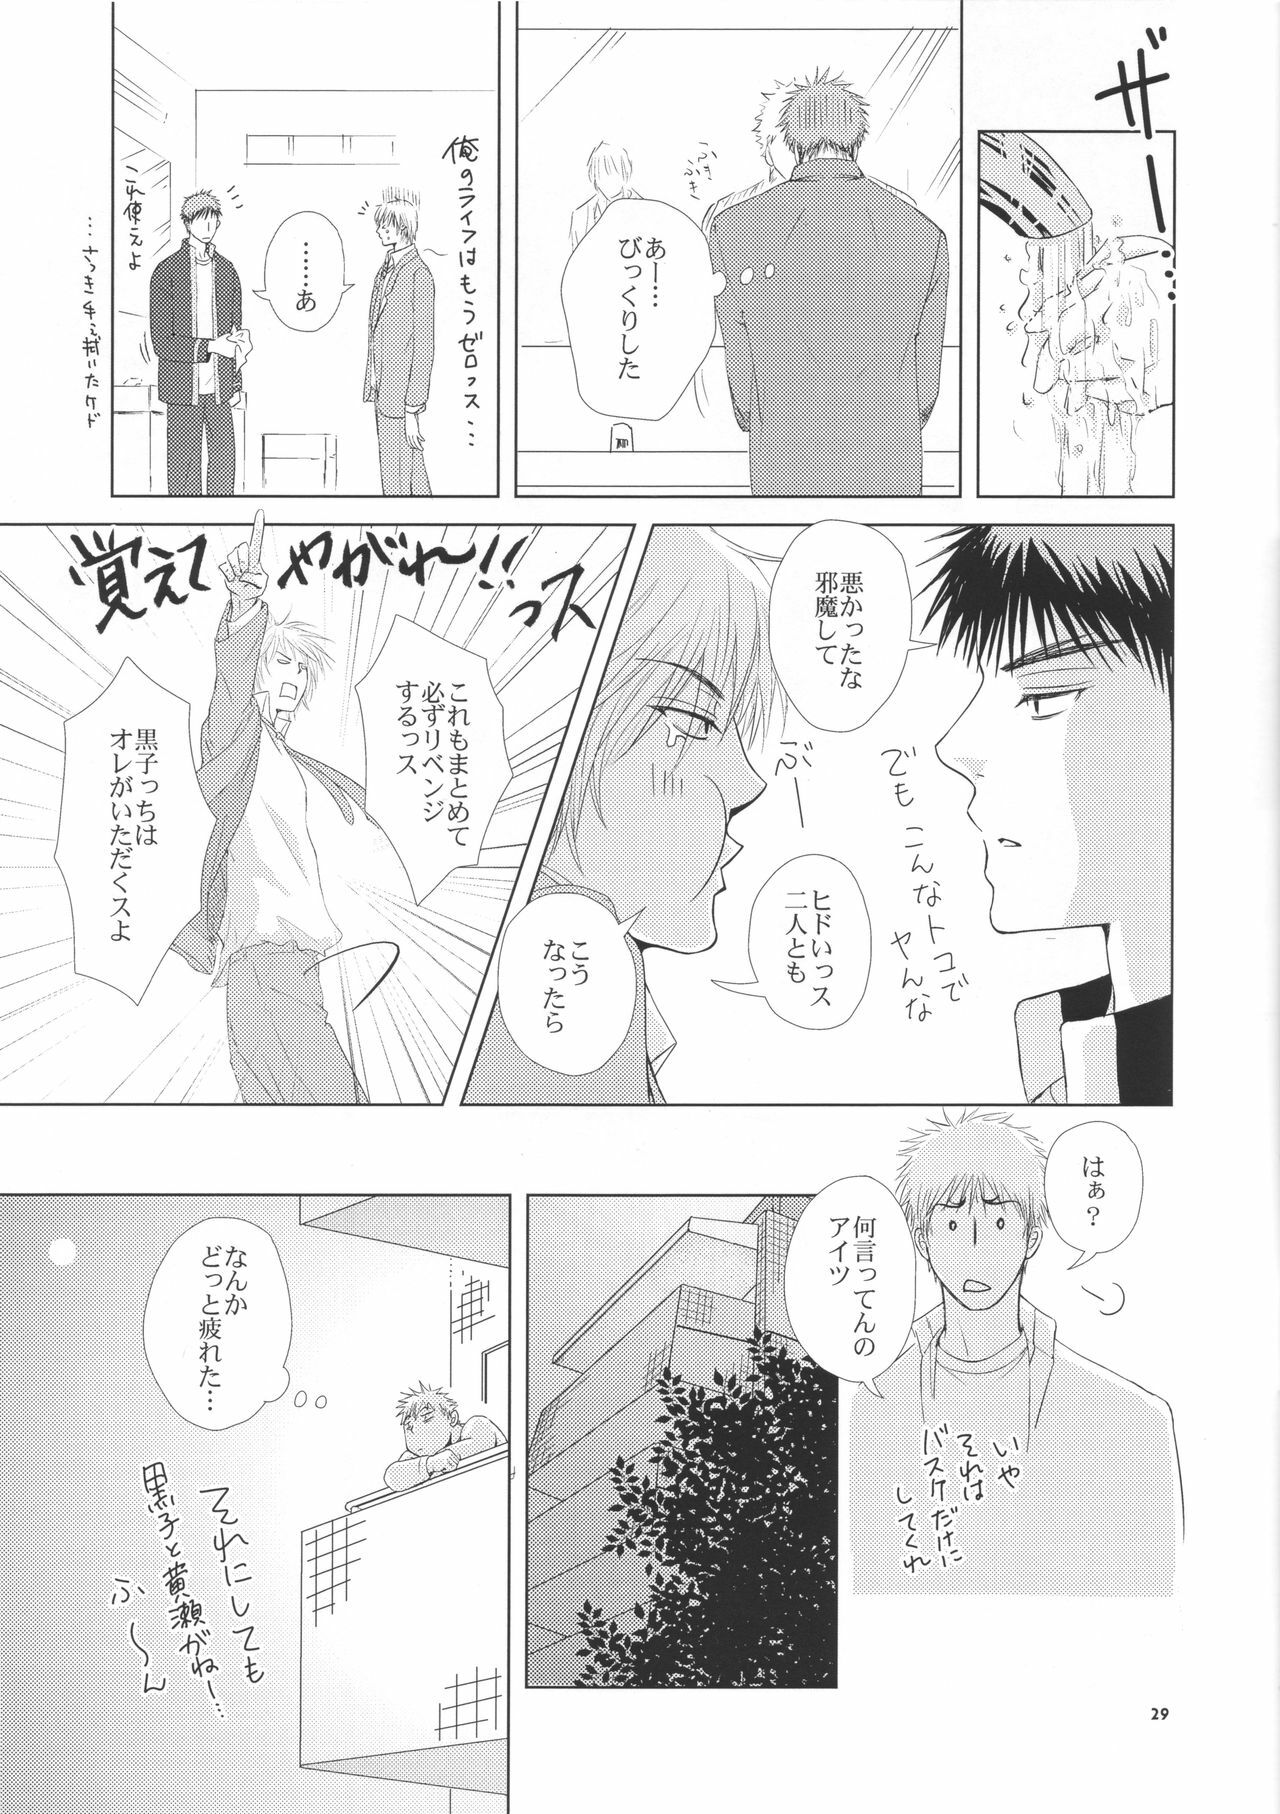 (Shadow Trickster 2) [ViViaN (JiN)] VIOLATION→FOULS (Kuroko no Basuke) page 29 full